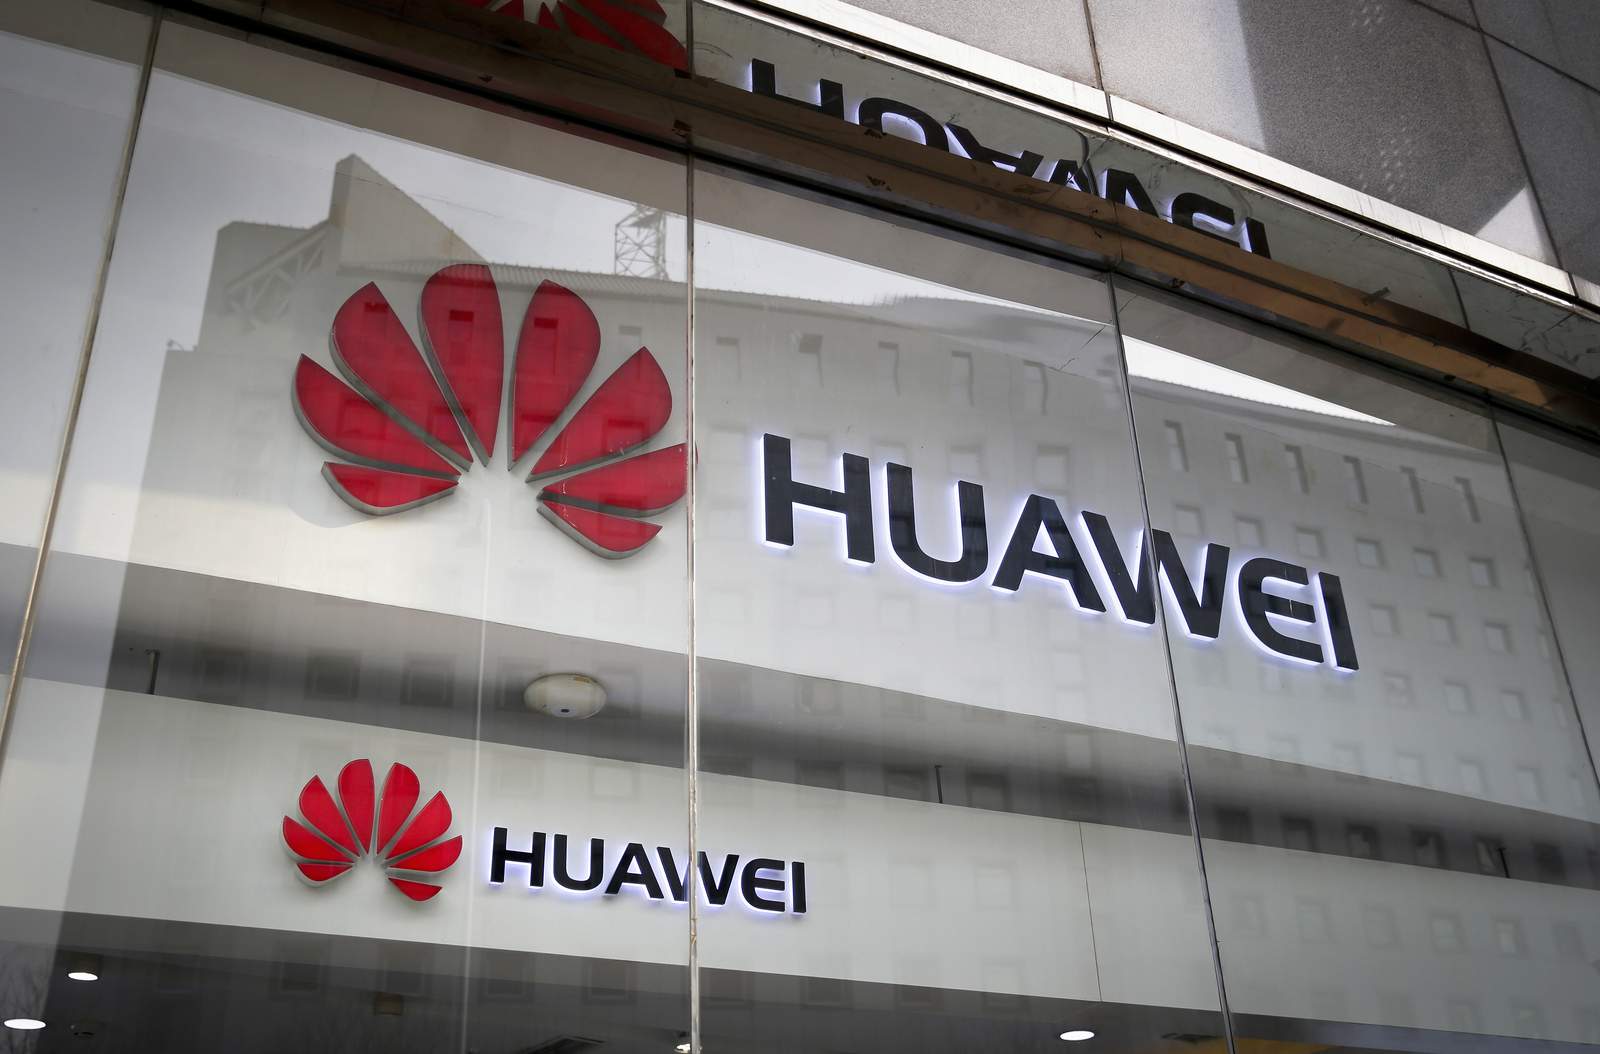 ARCHIVO - En esta foto de archivo del 29 de enero de 2019, los logotipos de Huawei se muestran en el escaparate de su tienda minorista con el reflejo de la oficina del Ministerio de Relaciones Exteriores en Beijing.  Un comité de legisladores insta el jueves 8 de octubre de 2020 al gobierno británico a considerar prohibir al gigante tecnológico chino Huawei de las redes de telefonía móvil de próxima generación del país dos años antes de lo planeado.  (Foto AP / Andy Wong, archivo)